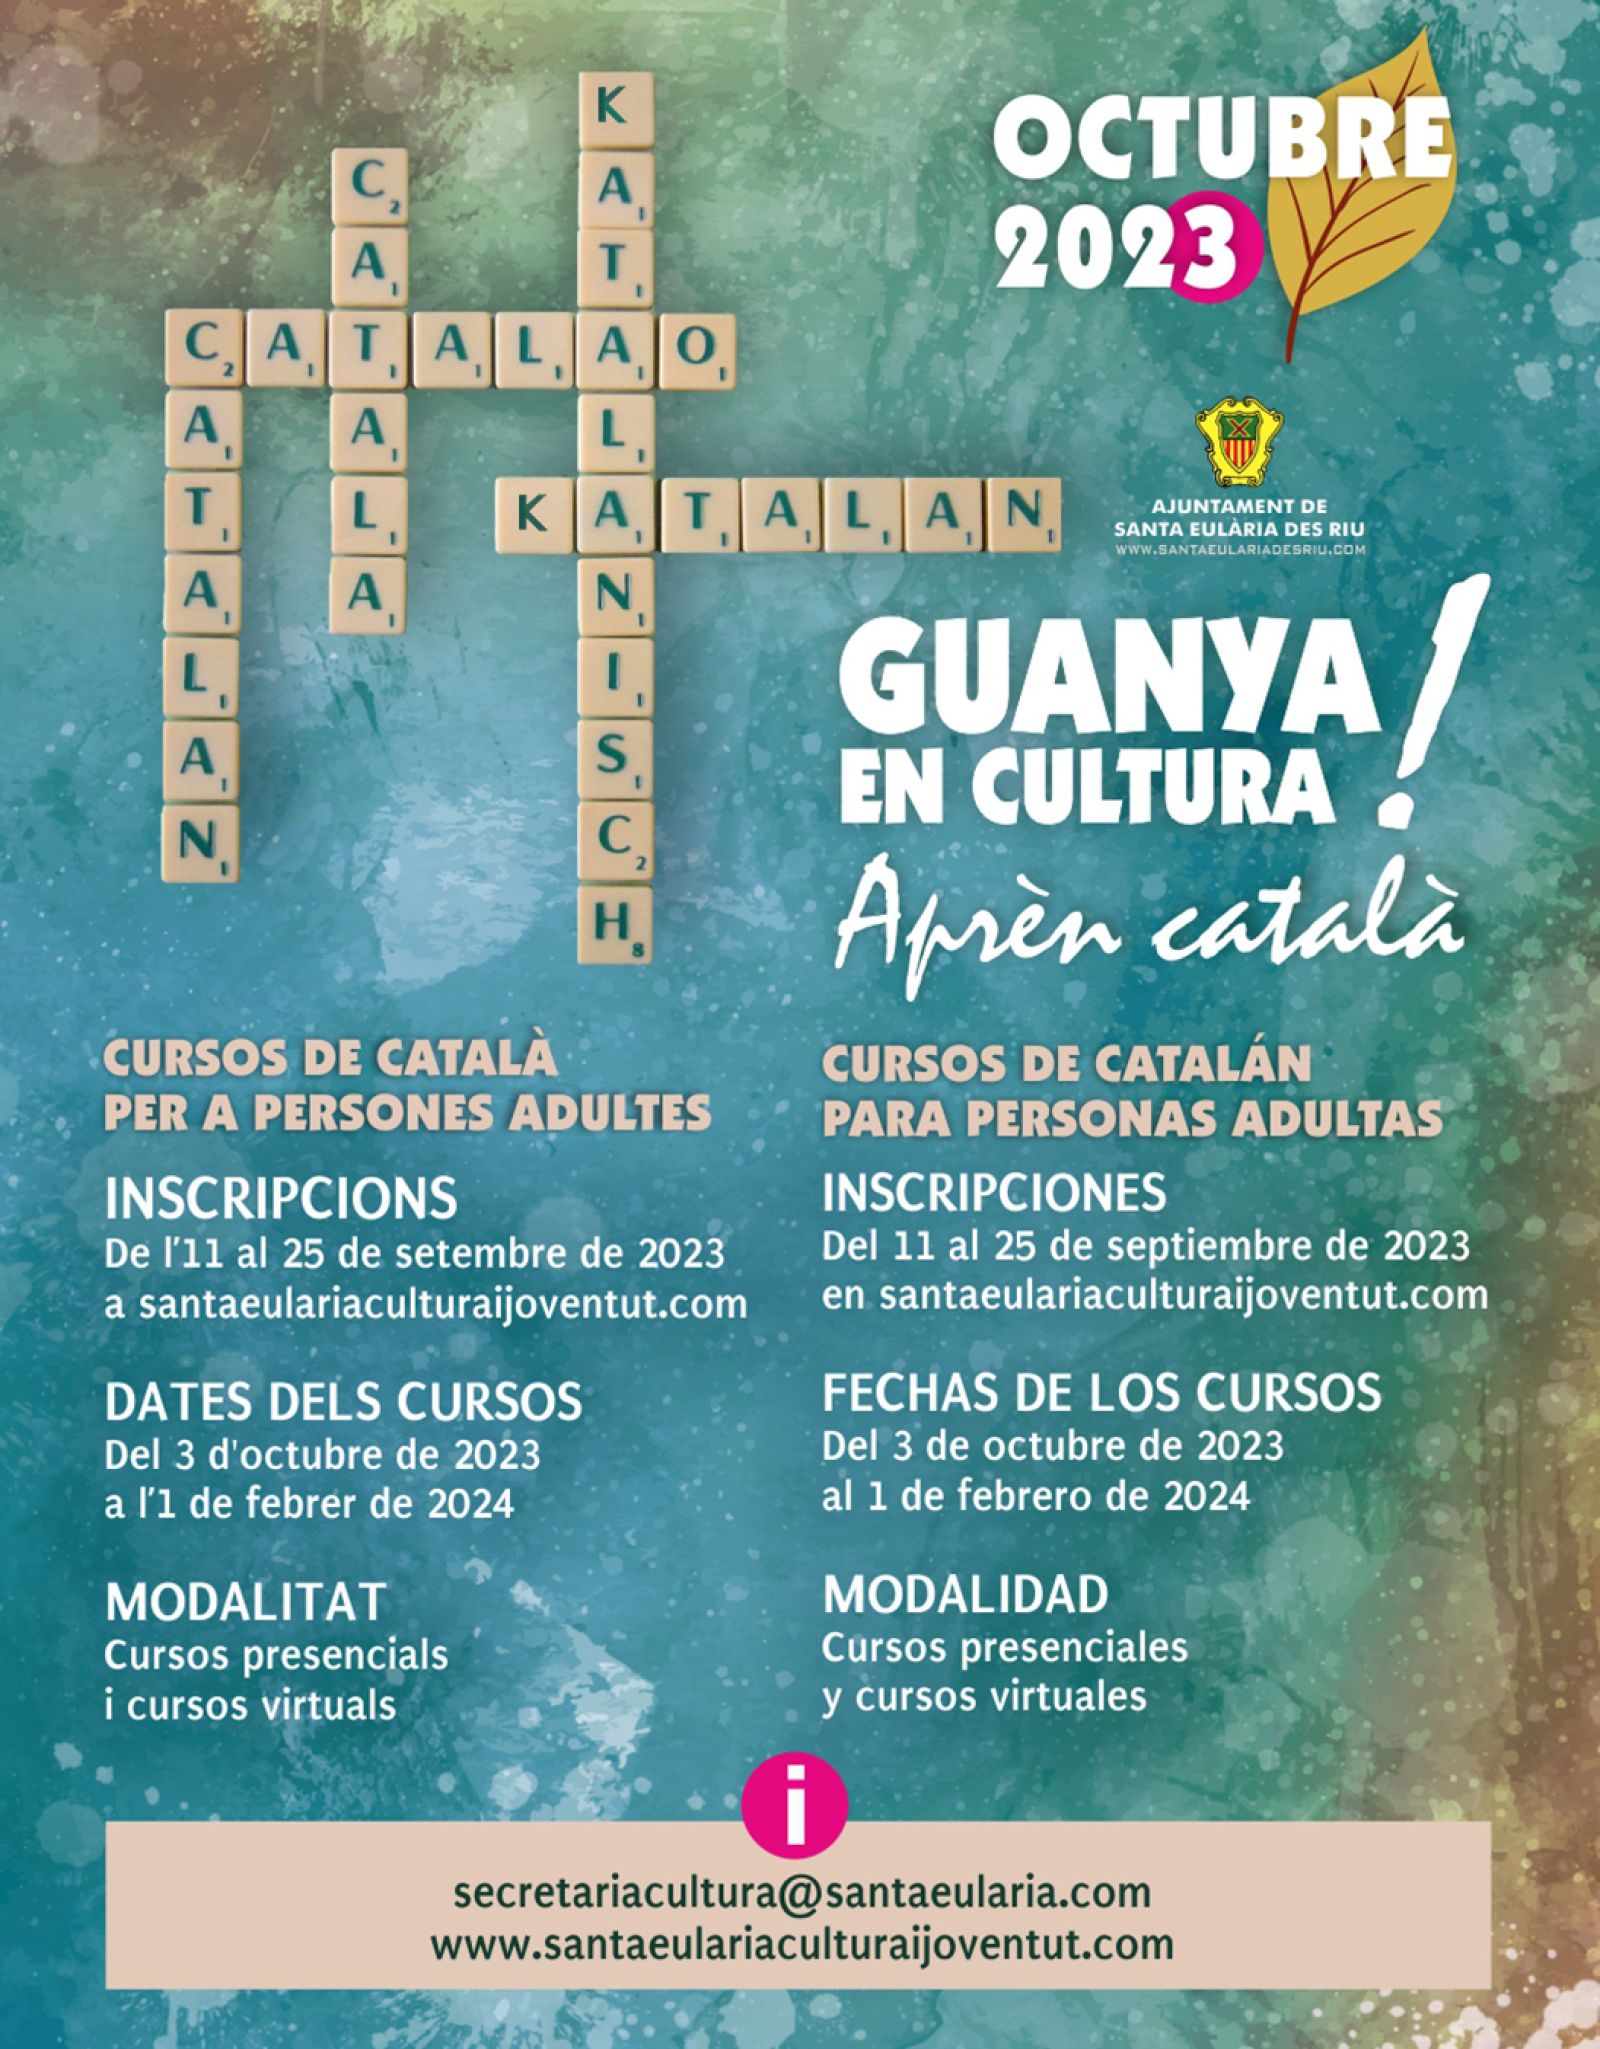 El próximo lunes, 11 de septiembre, se abre el plazo para inscribirse a los cursos de catalán del Ayuntamiento